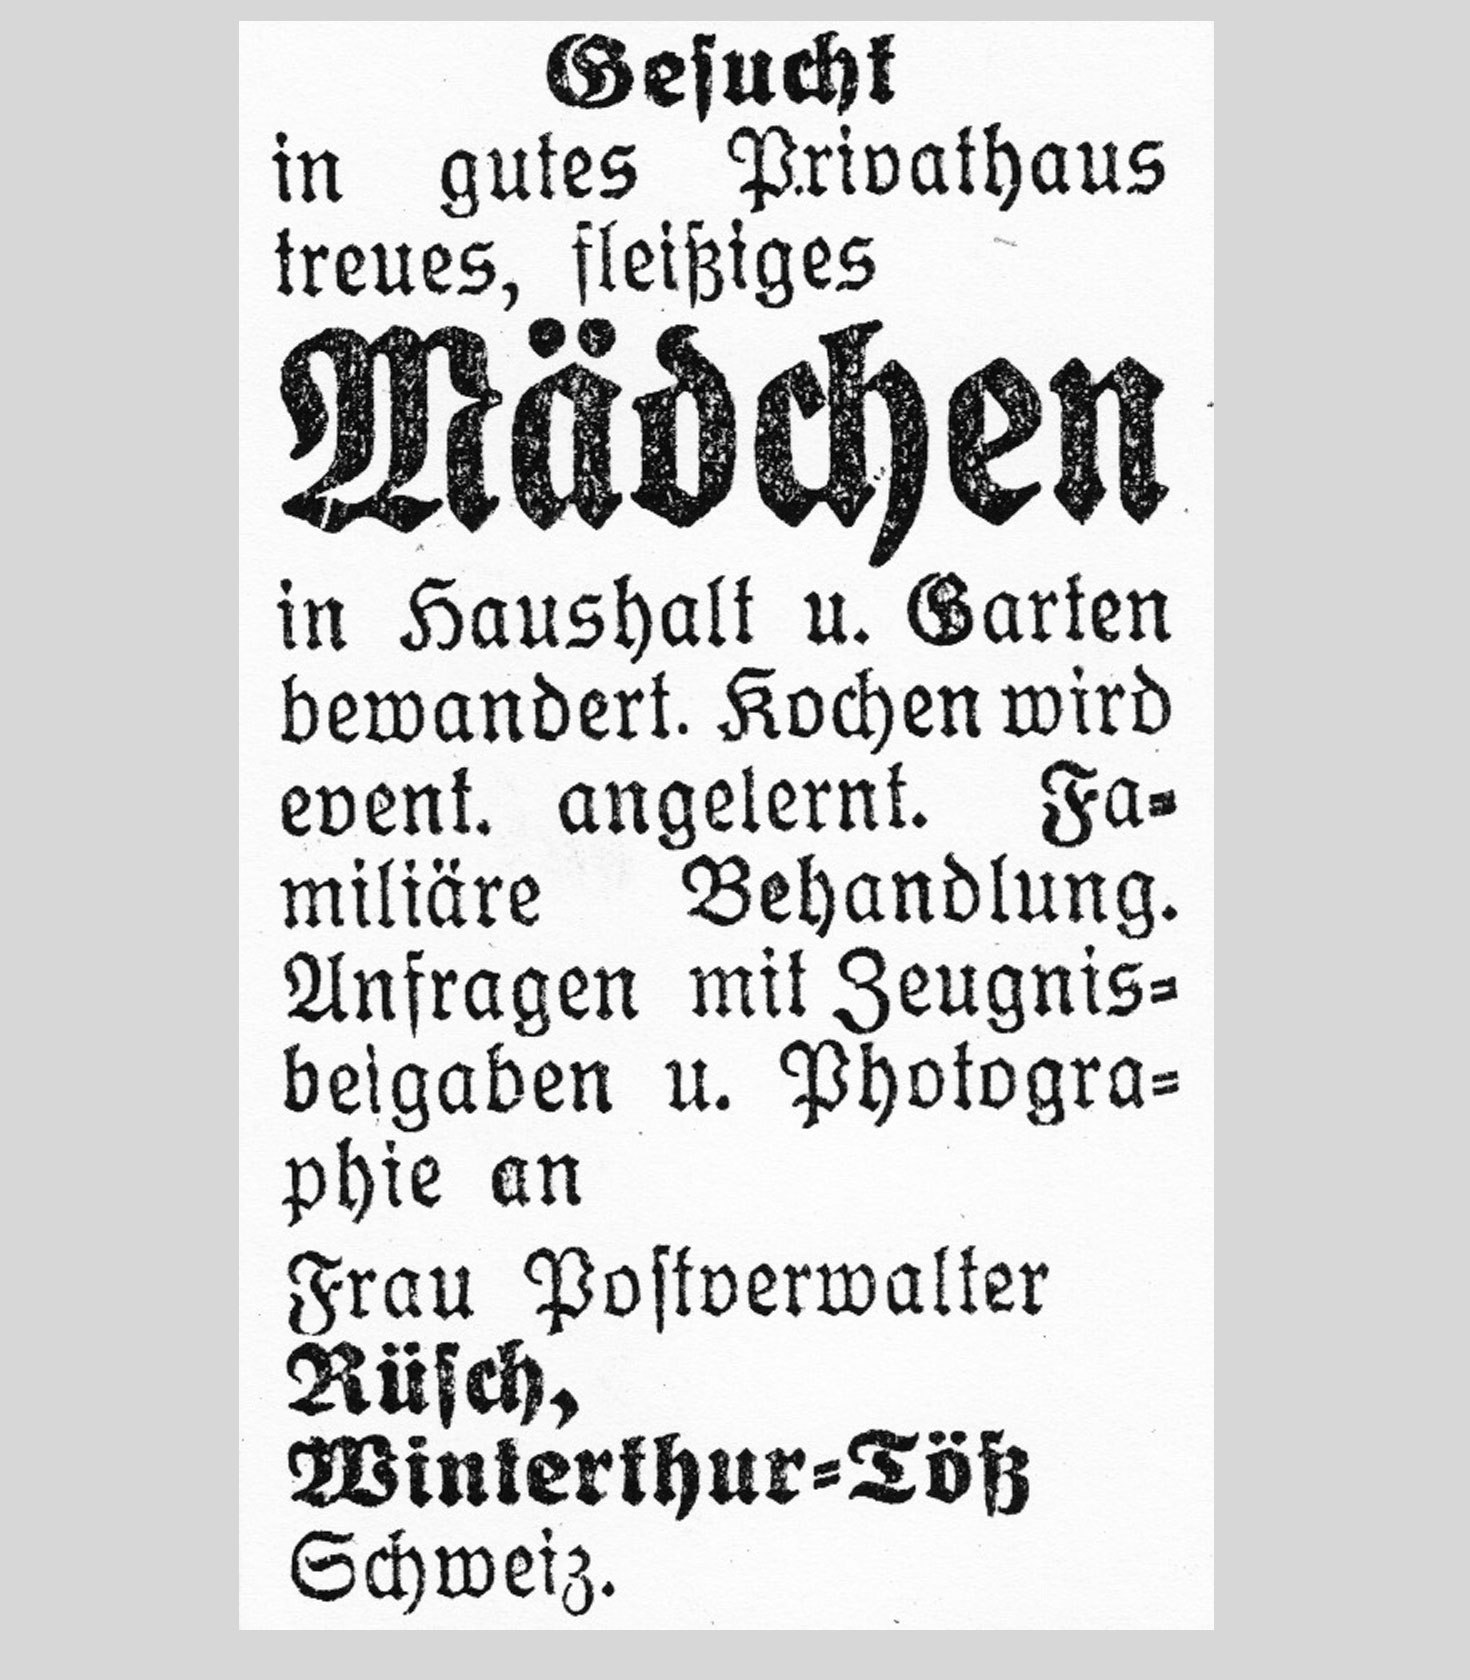 Stellenanzeige aus der Schweiz, Donaueschinger Tagblatt, 1930, Privatarchiv Andrea Althaus.